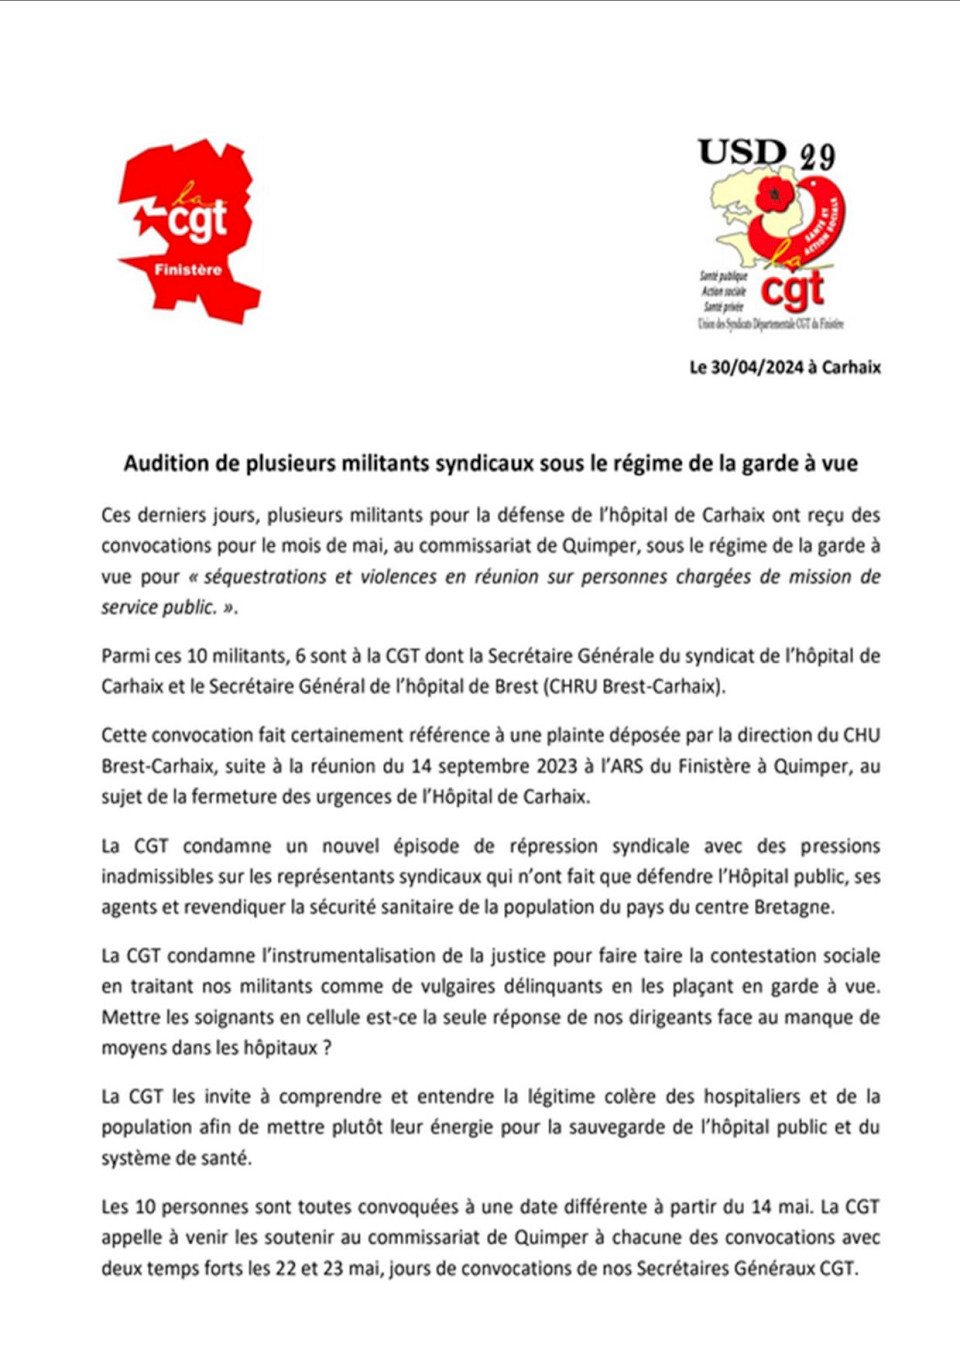 Audition de plusieurs militants syndicaux du secteur de la Santé sous le régime de la garde à vue / Finistère 